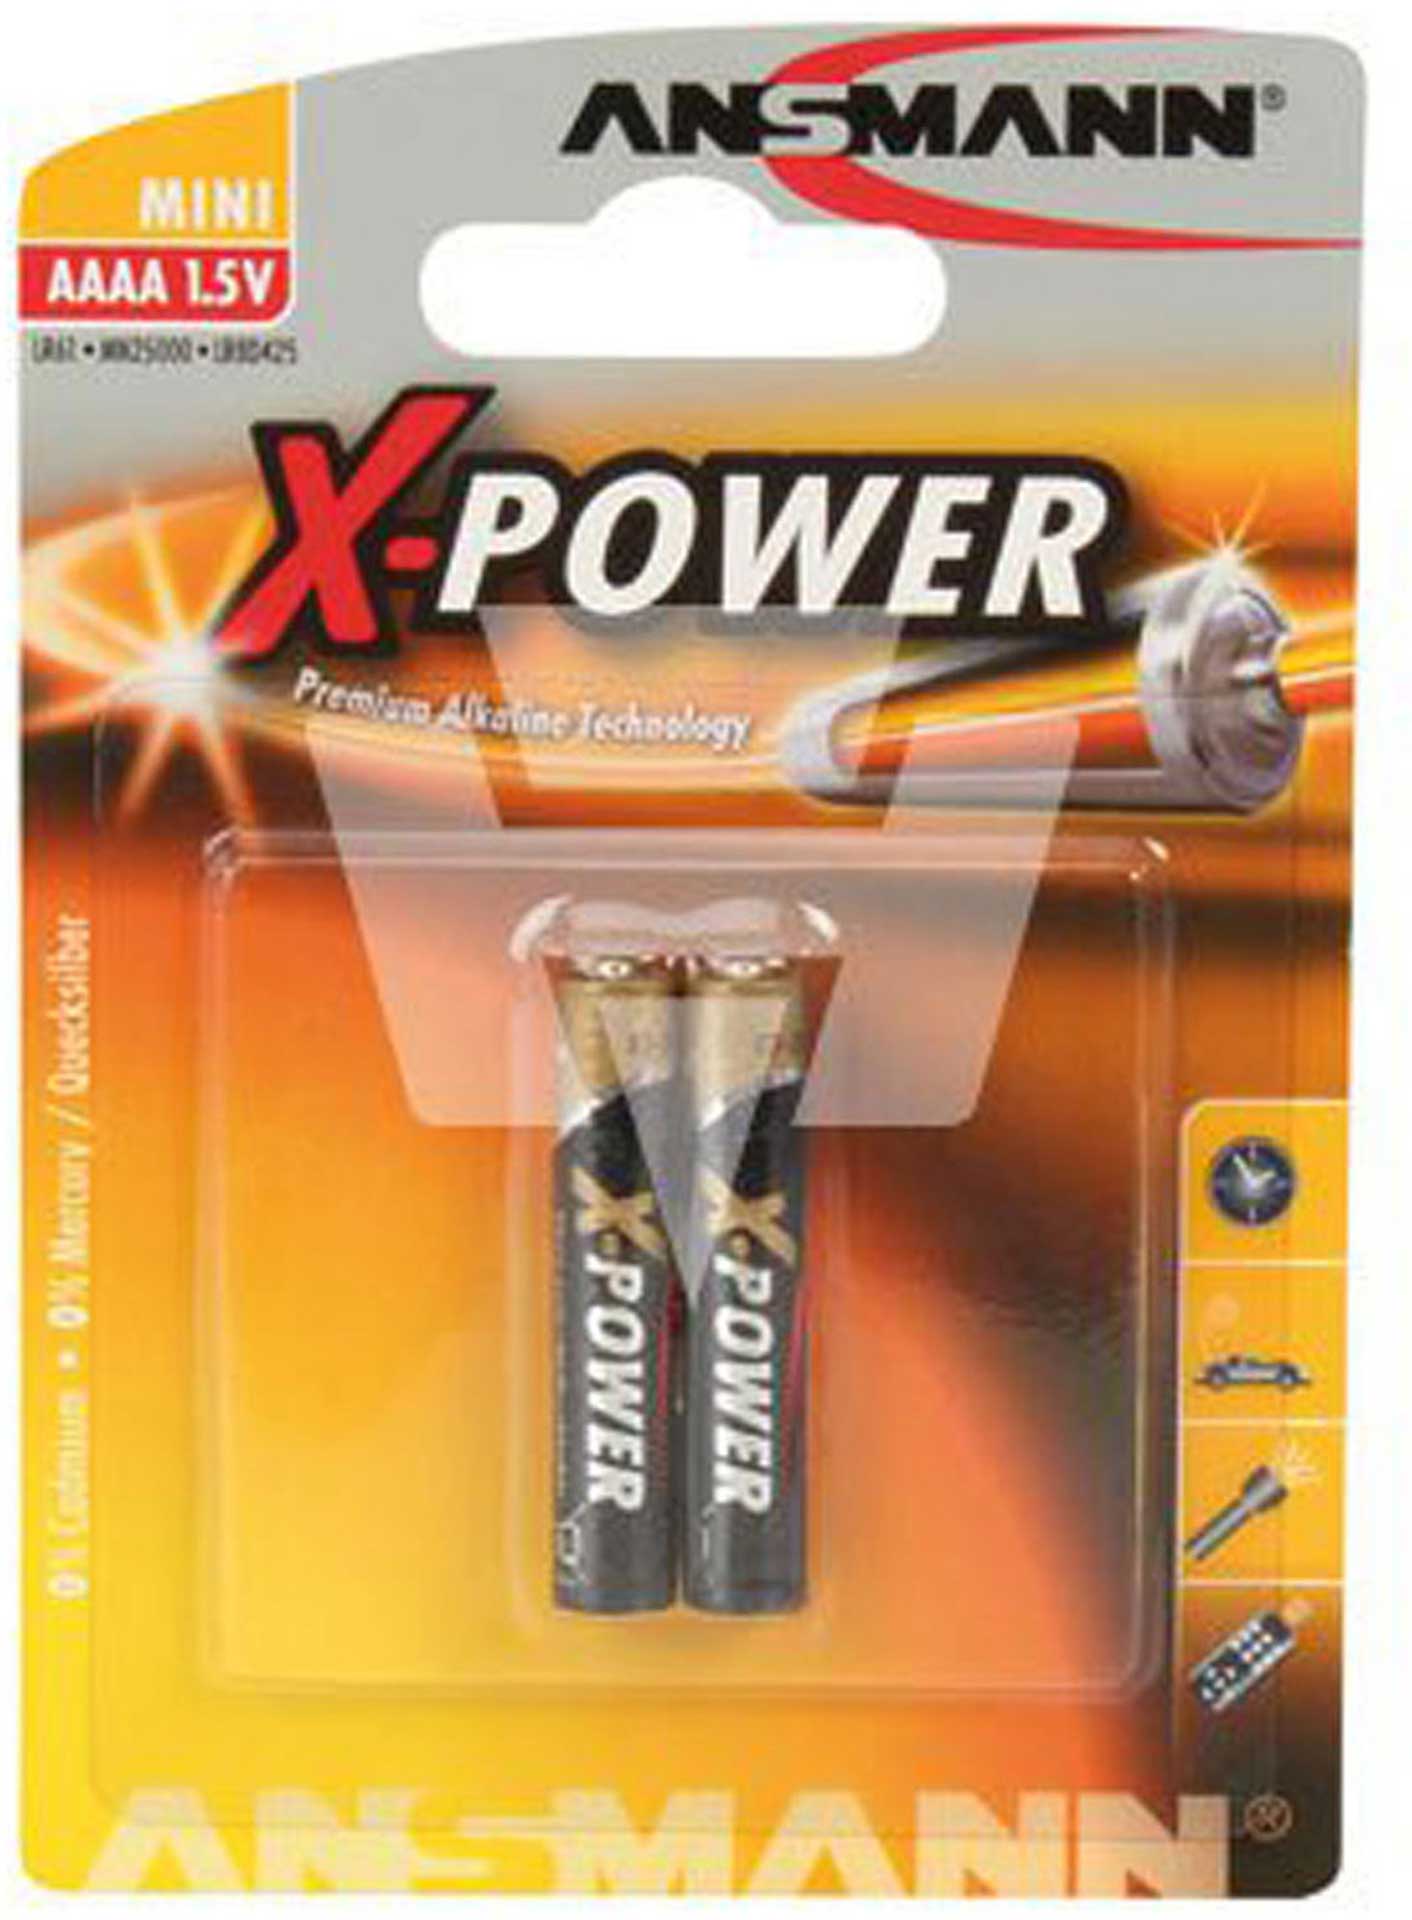 ANSMANN AAAA X-POWER ALKALINE BATTERY 2PCS.  LR8, LR8D425, R8D425, LR61, E96, MX2500, V4004, V4761, MN2500, 25A